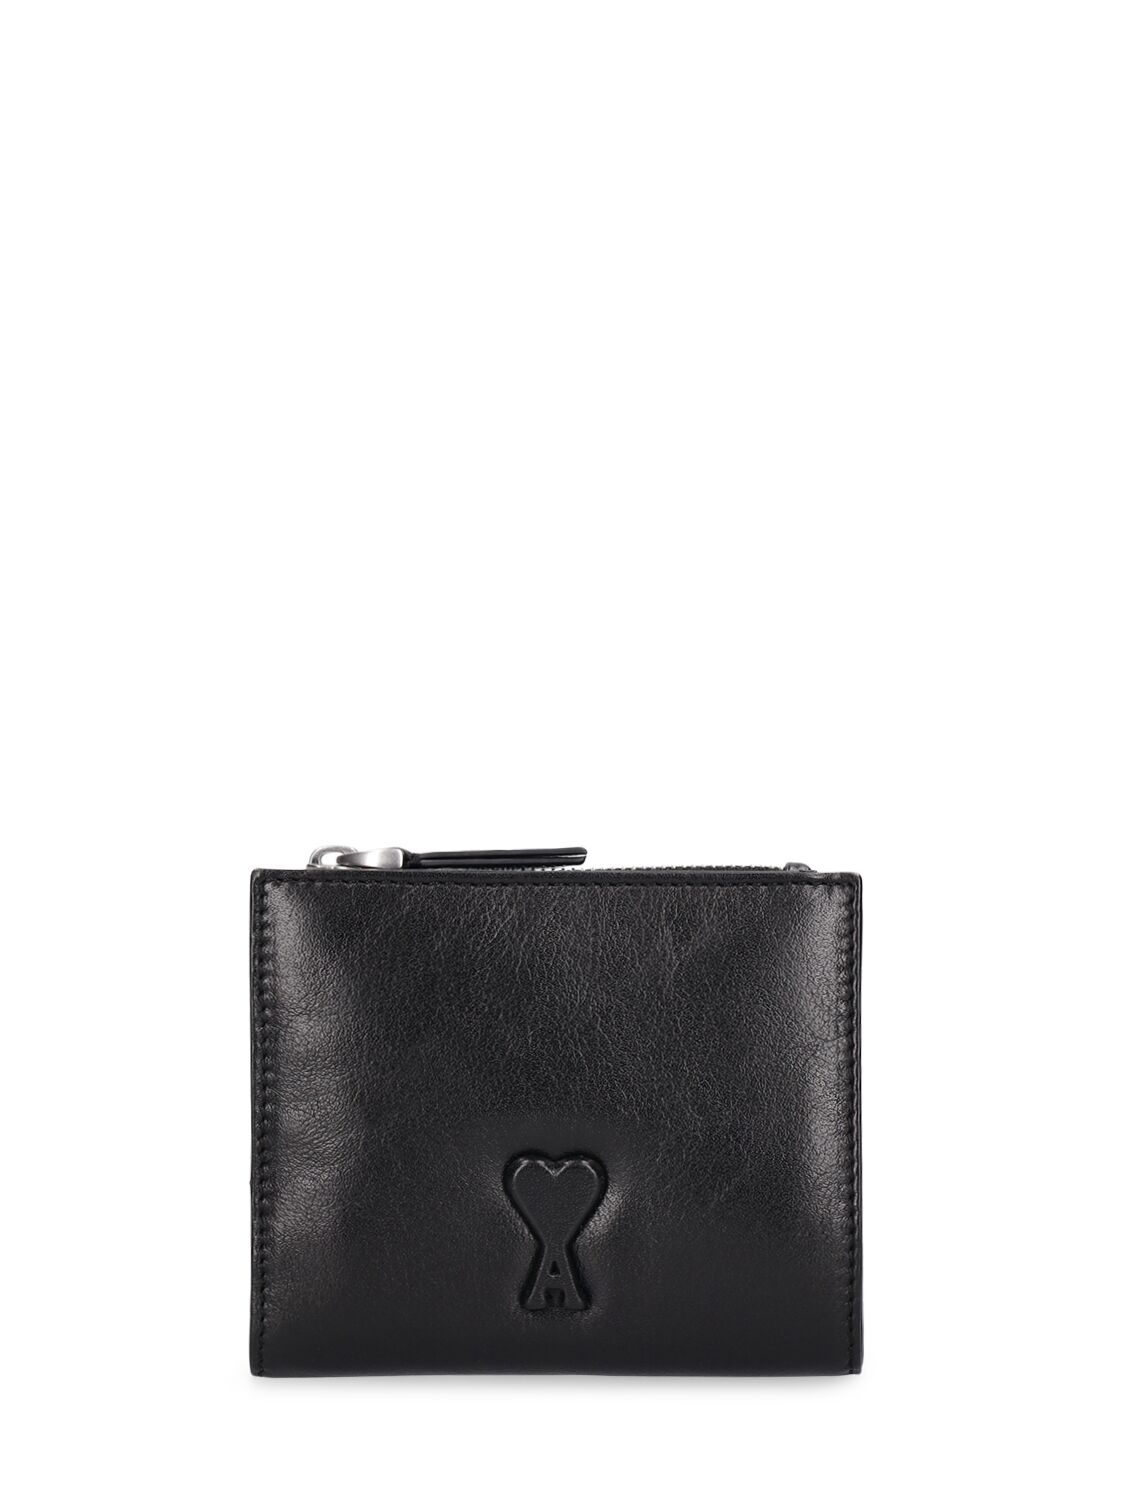 Shop Ami Alexandre Mattiussi Voulez Vous Folded Wallet In Black